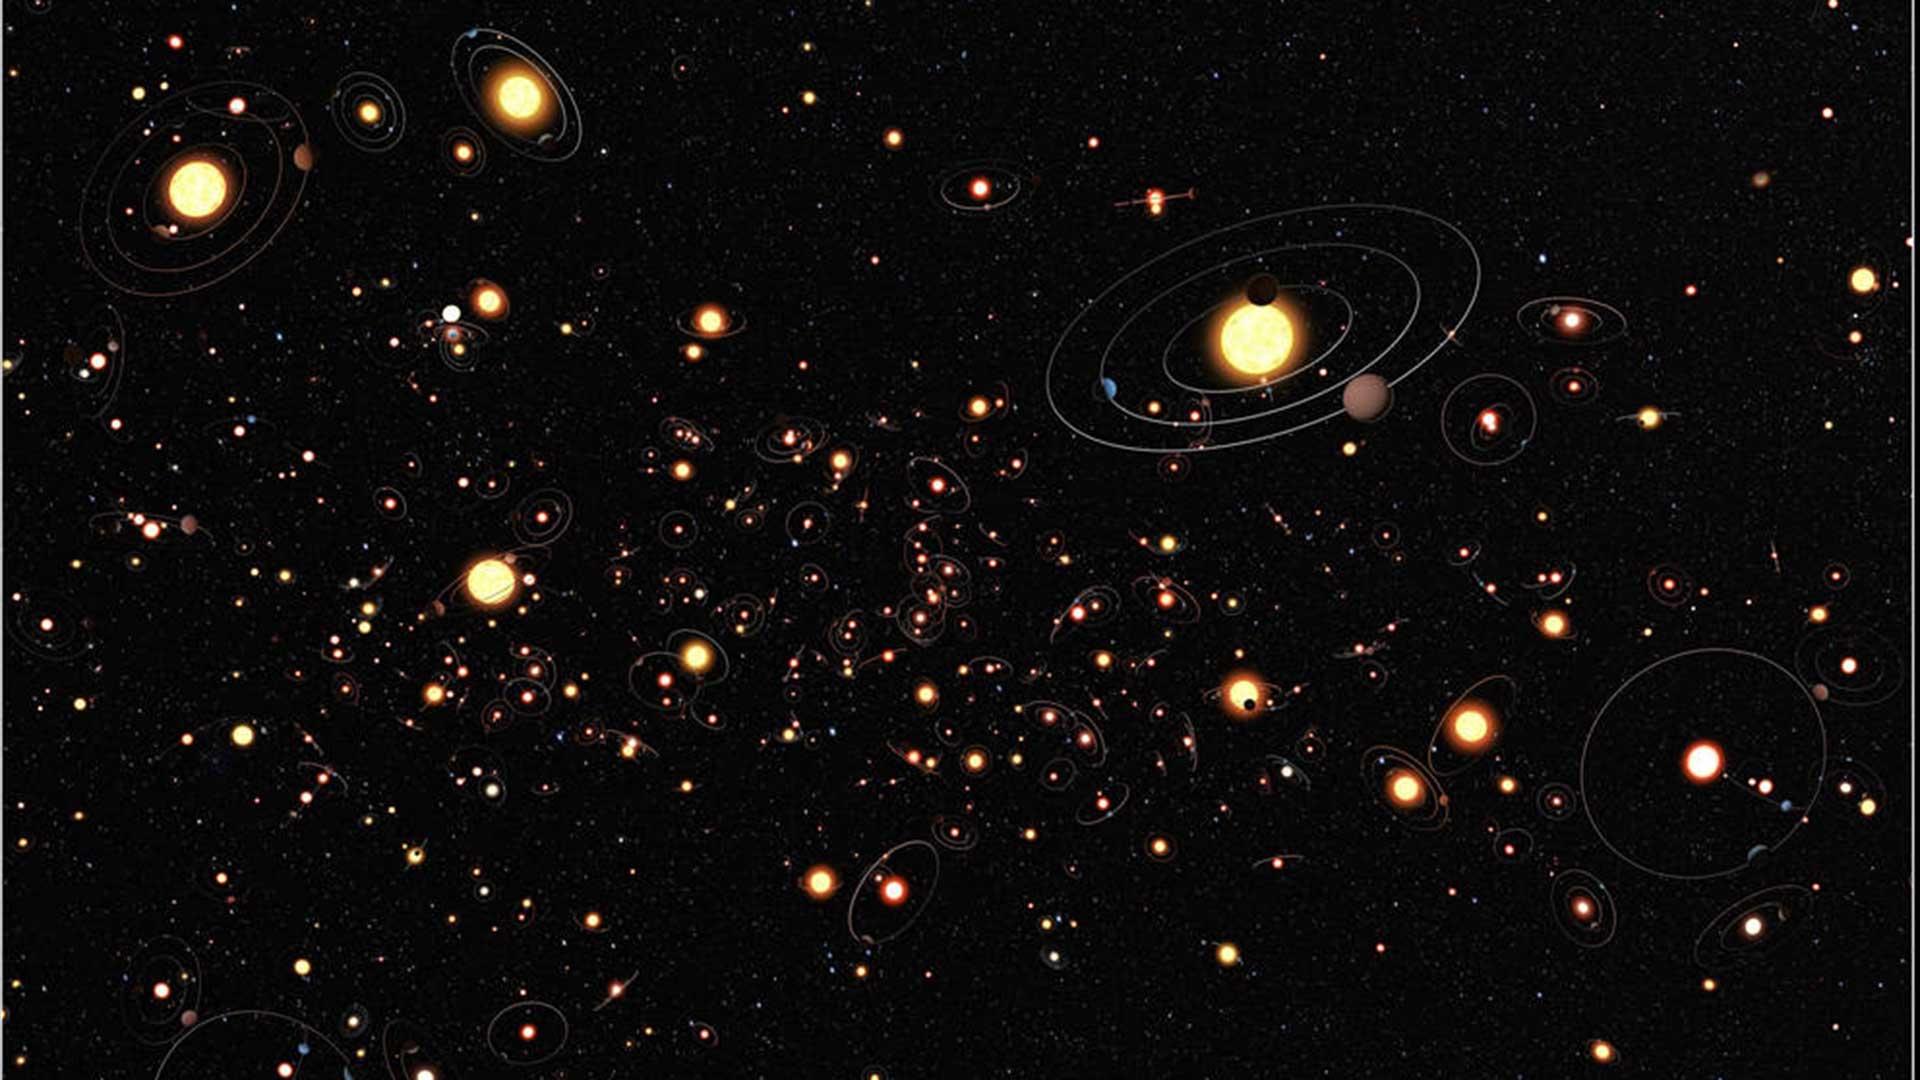 Un grupo de investigadores descubre por primera vez planetas fuera de la Vía Láctea